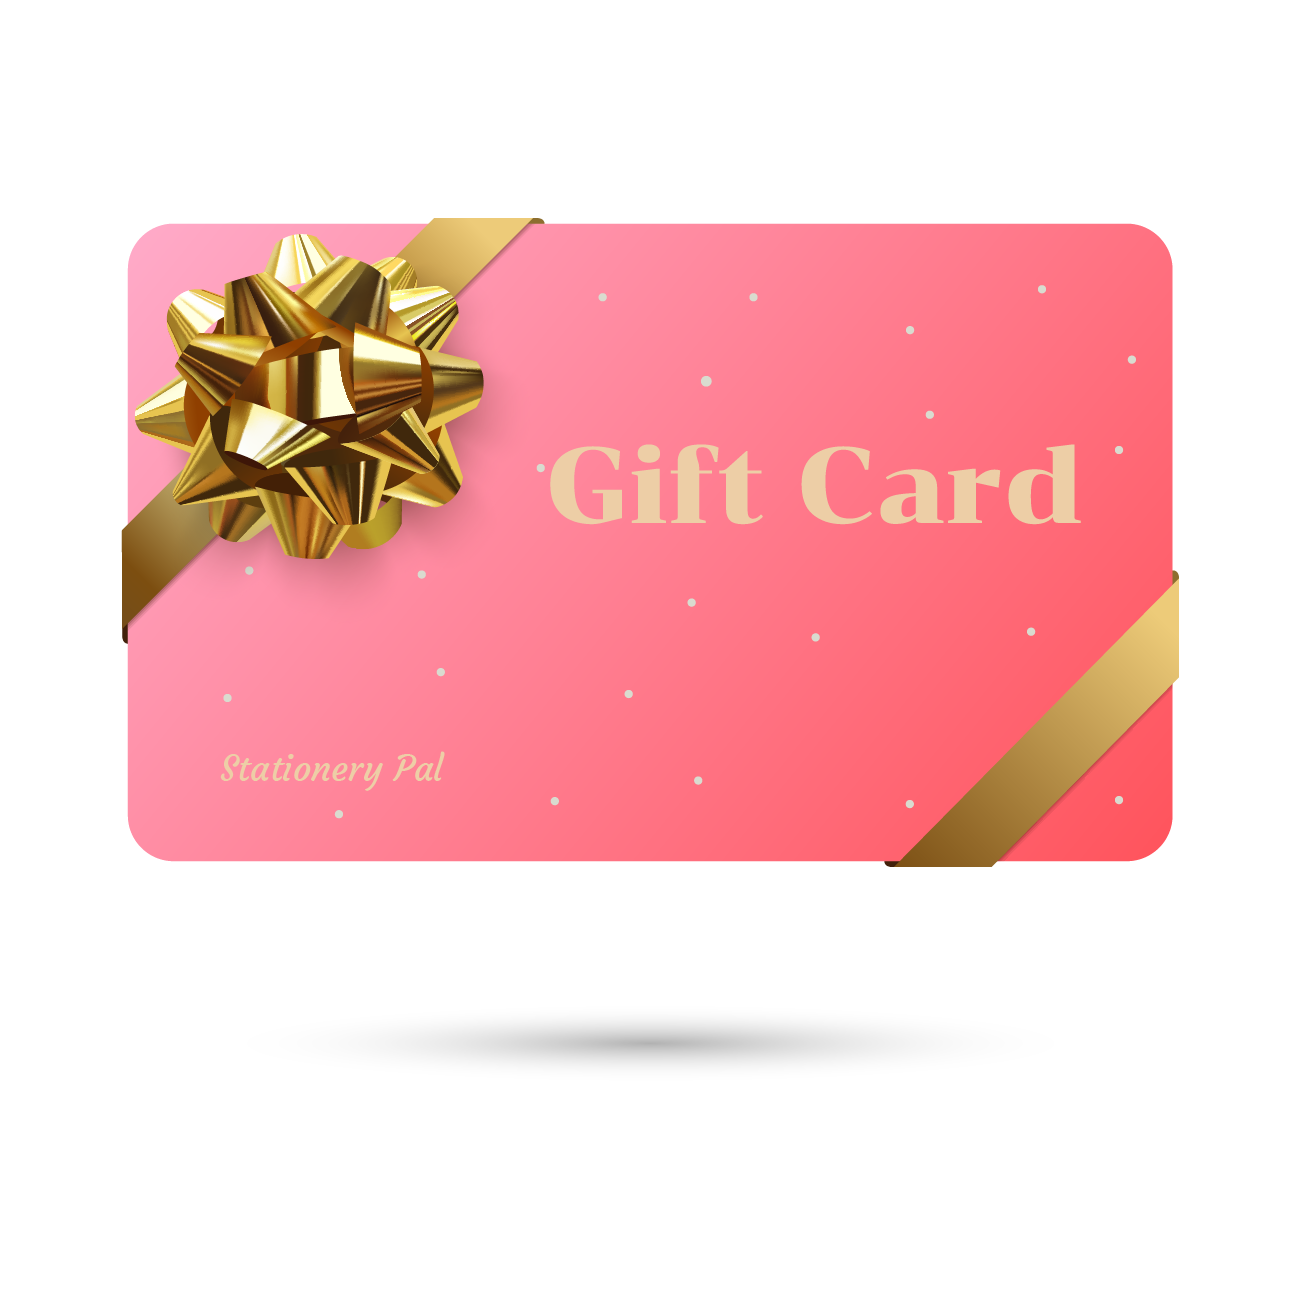 Share more than 171 gift card envelopes australia